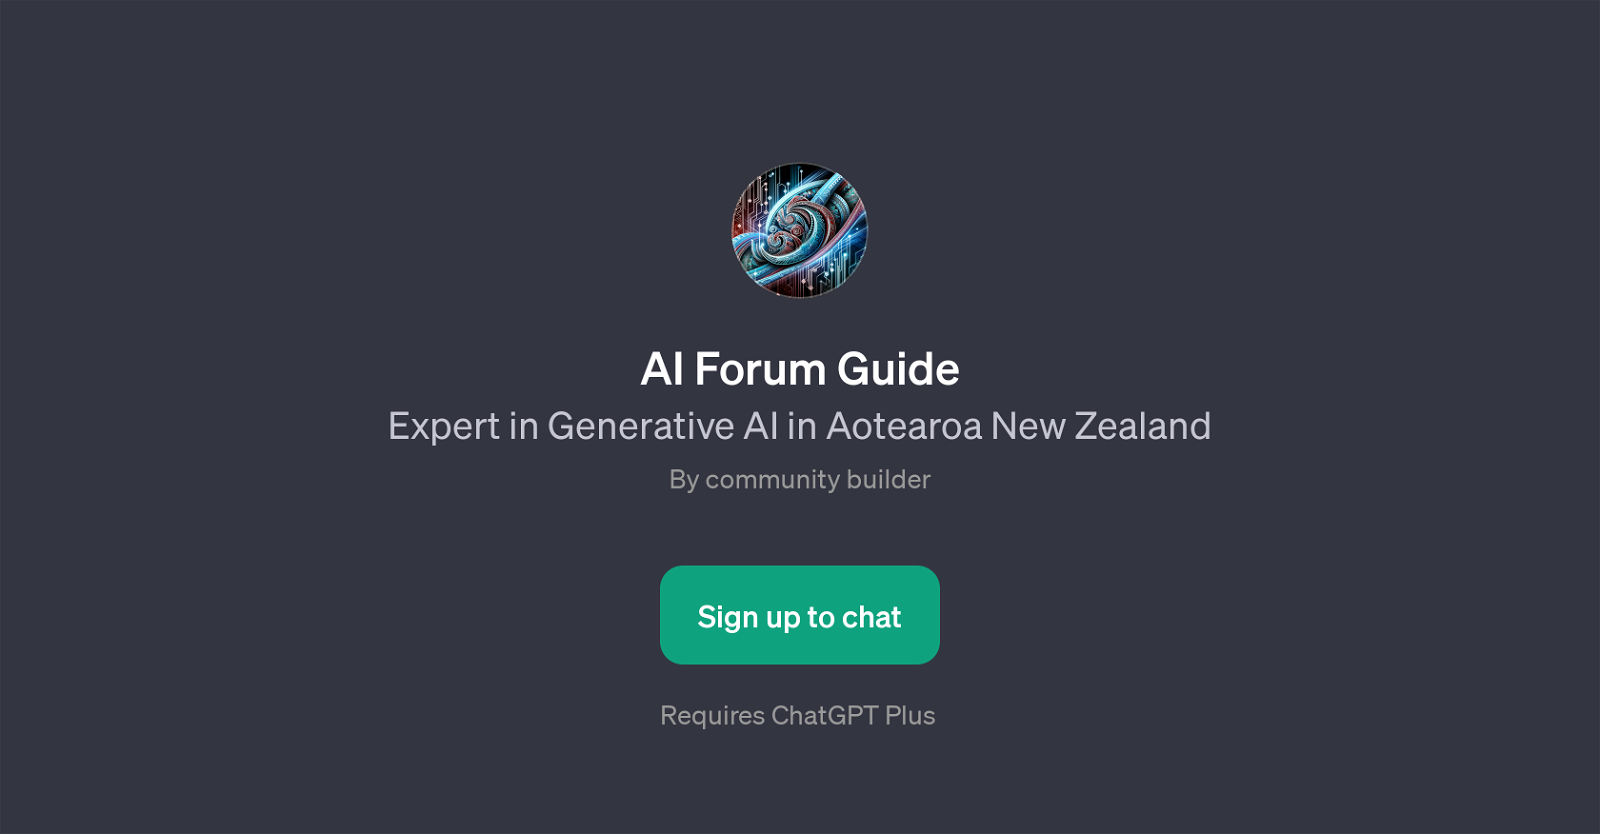 AI Forum Guide website